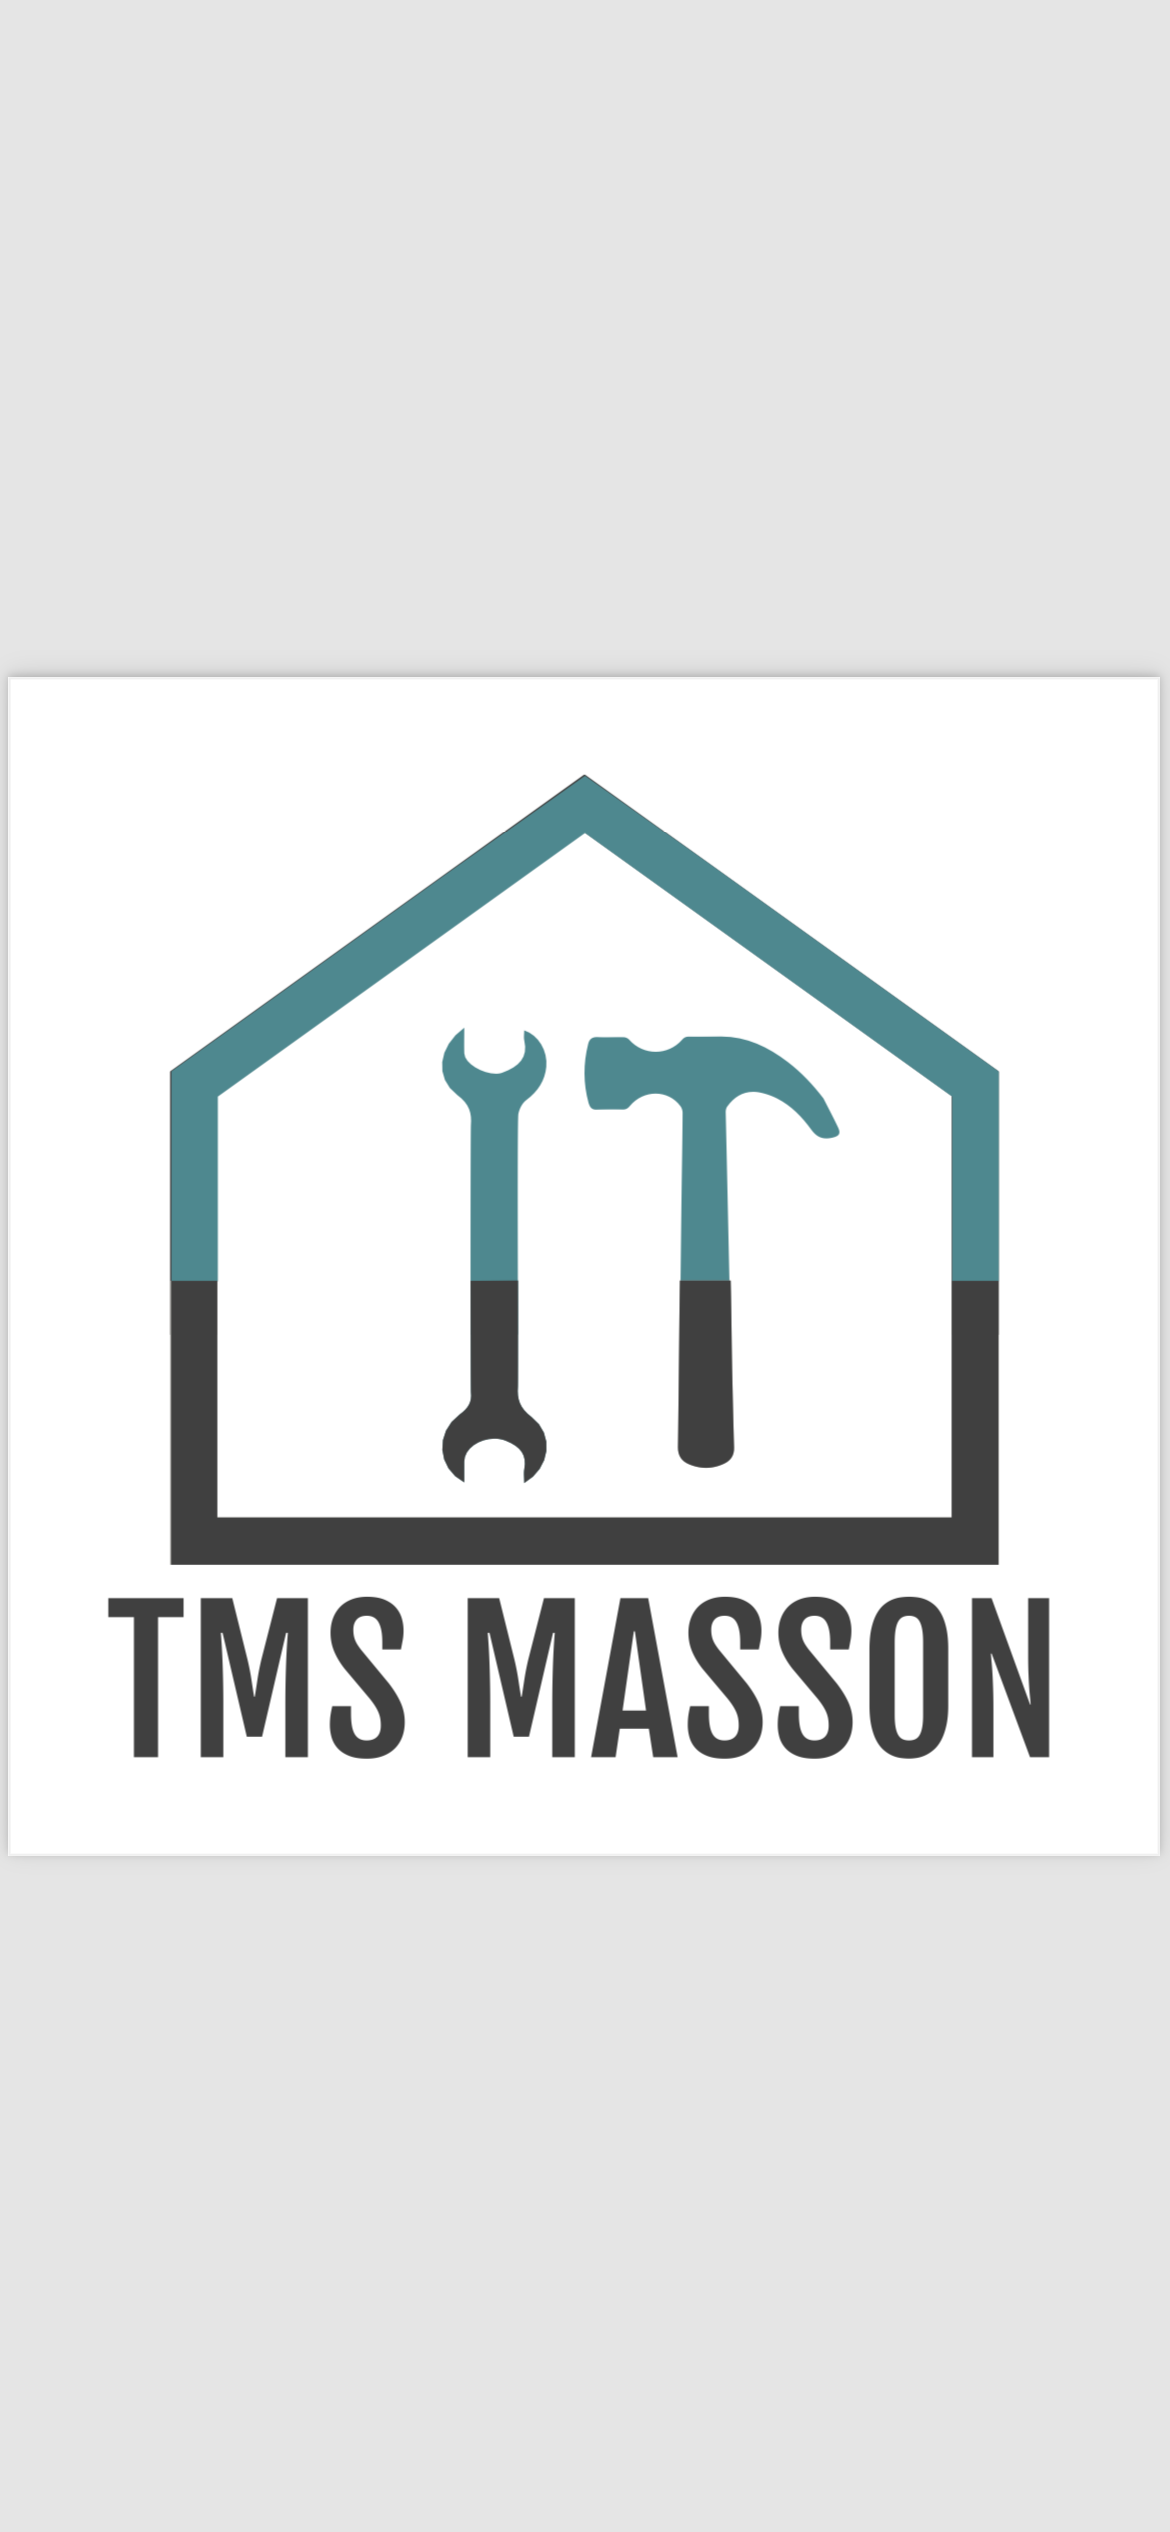 Logo de Tms masson, société de travaux en Déménagement de coffres-forts, pianos, billards, etc.